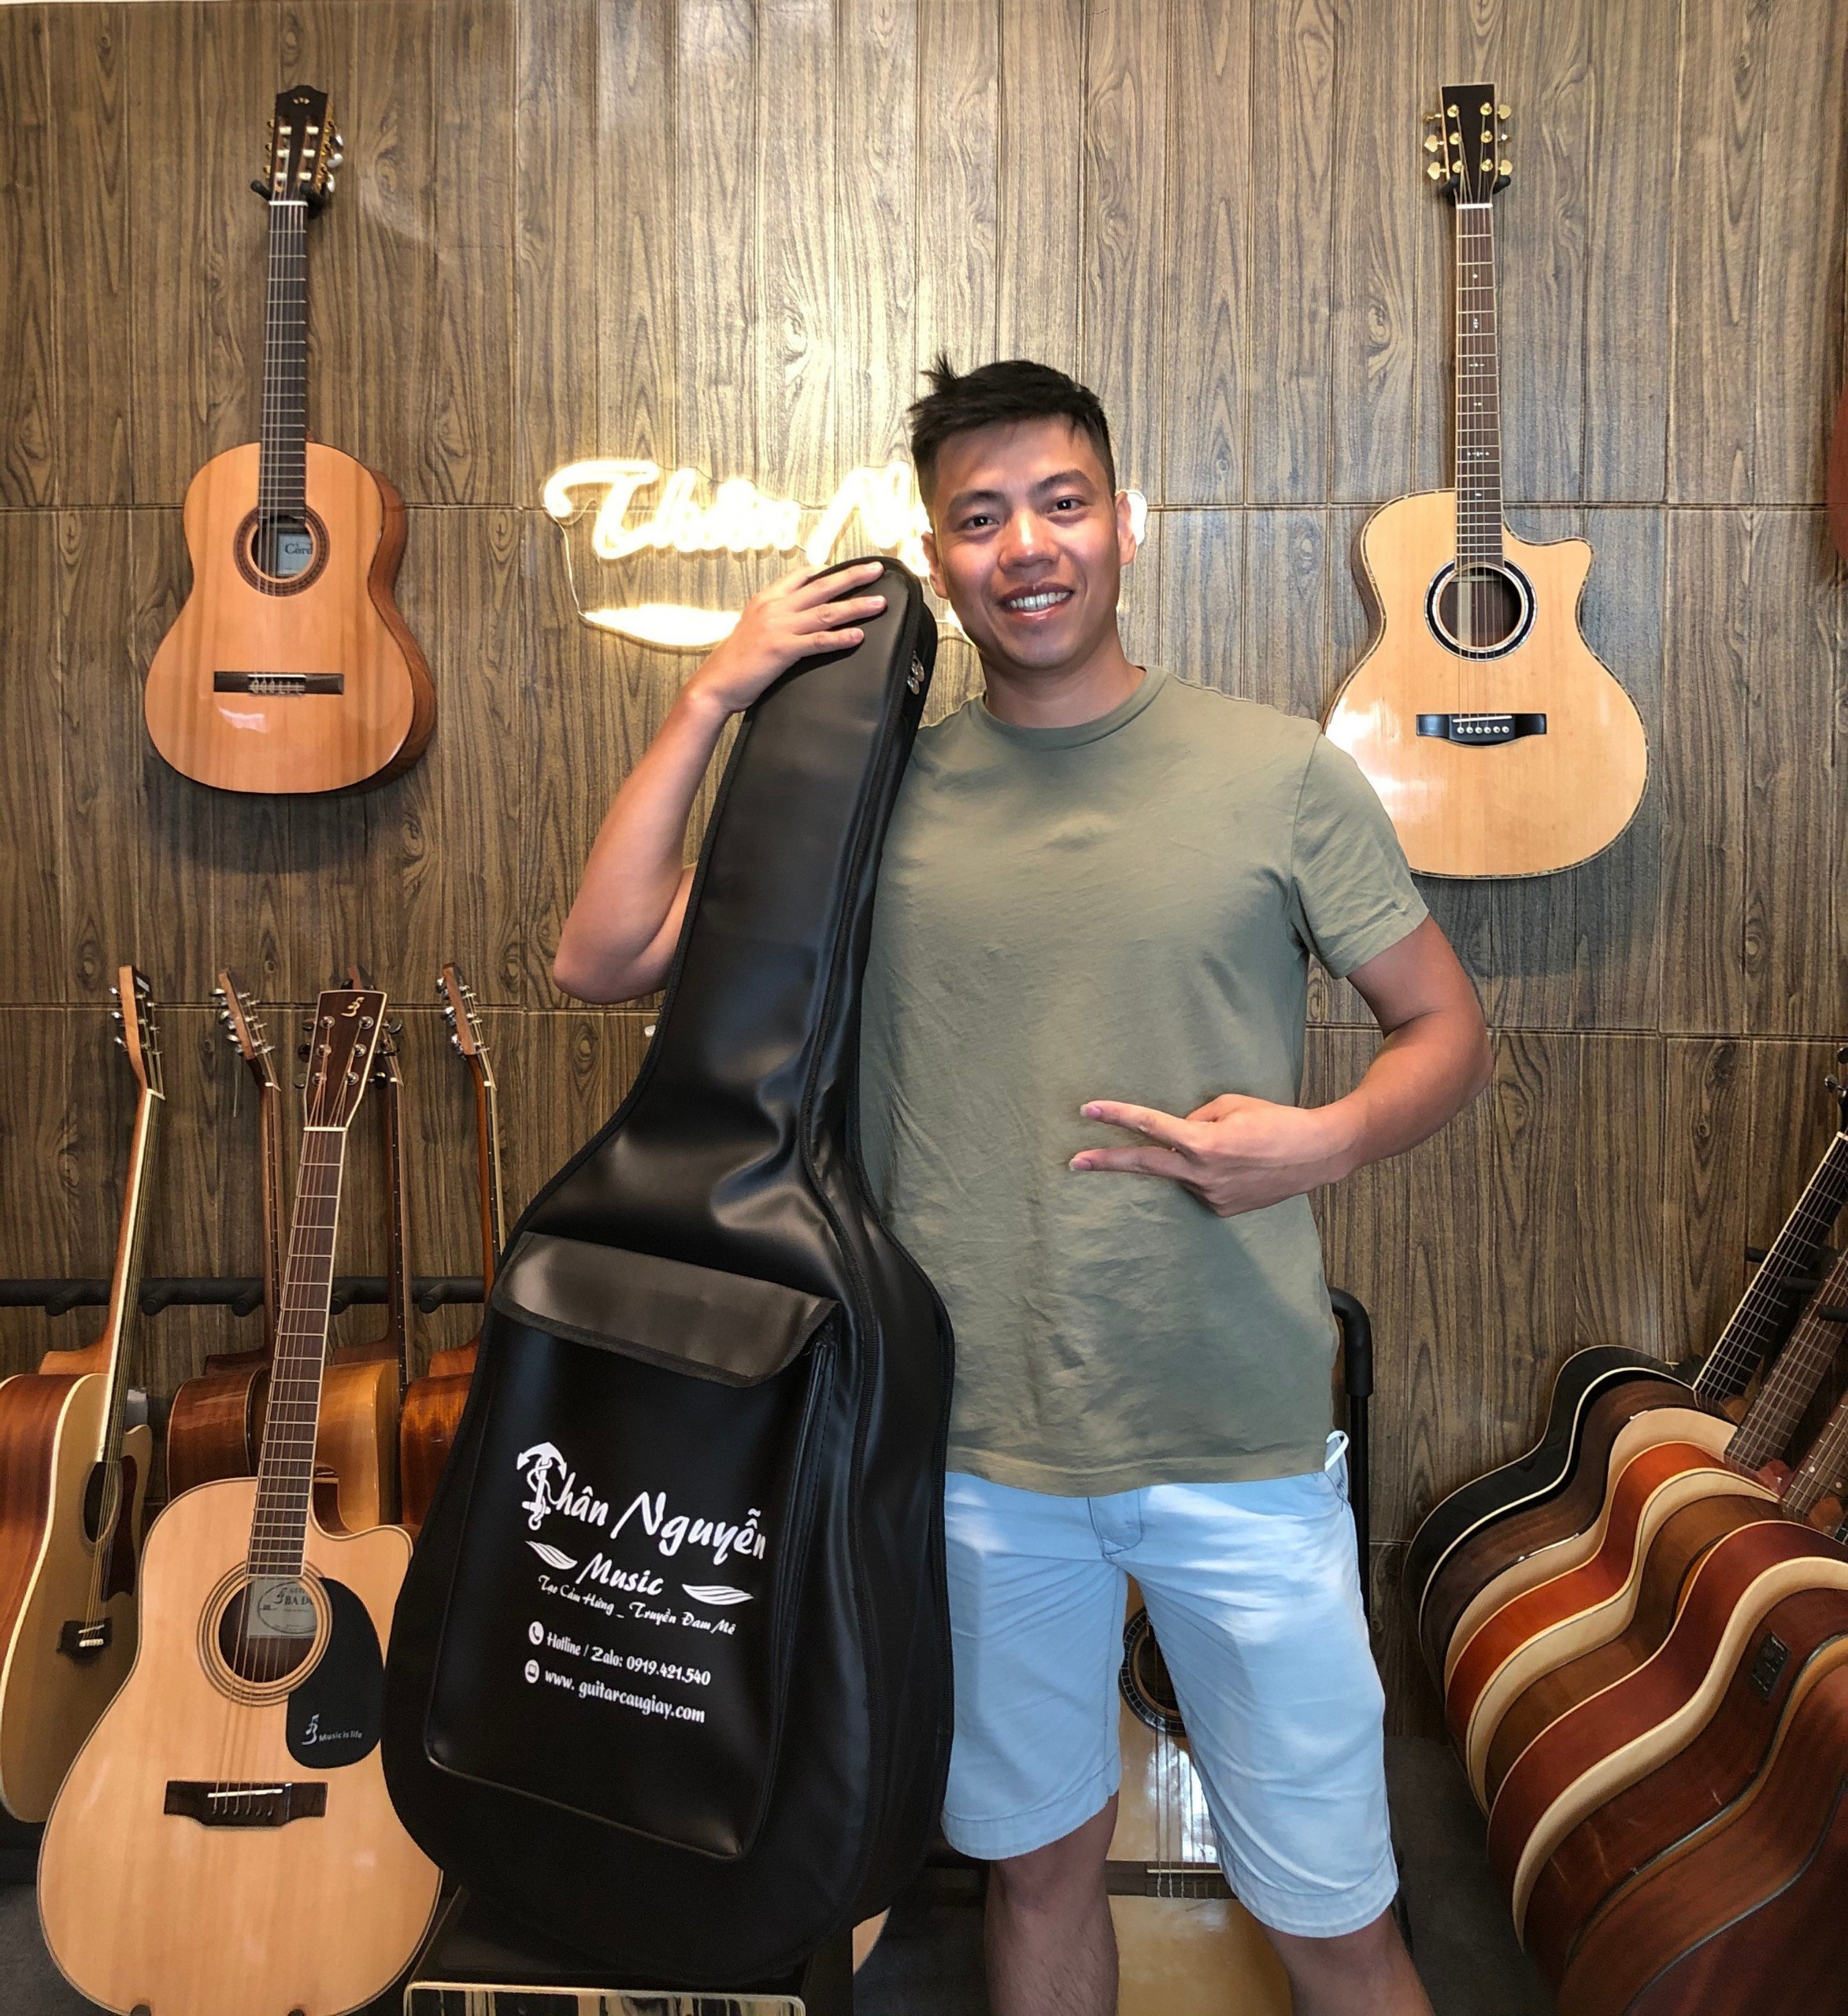 Shop Guitar Đông Anh Hà Nội, Cửa hàng Bán Guitar, Sửa đàn Guitar Uy Tín Hà Nội